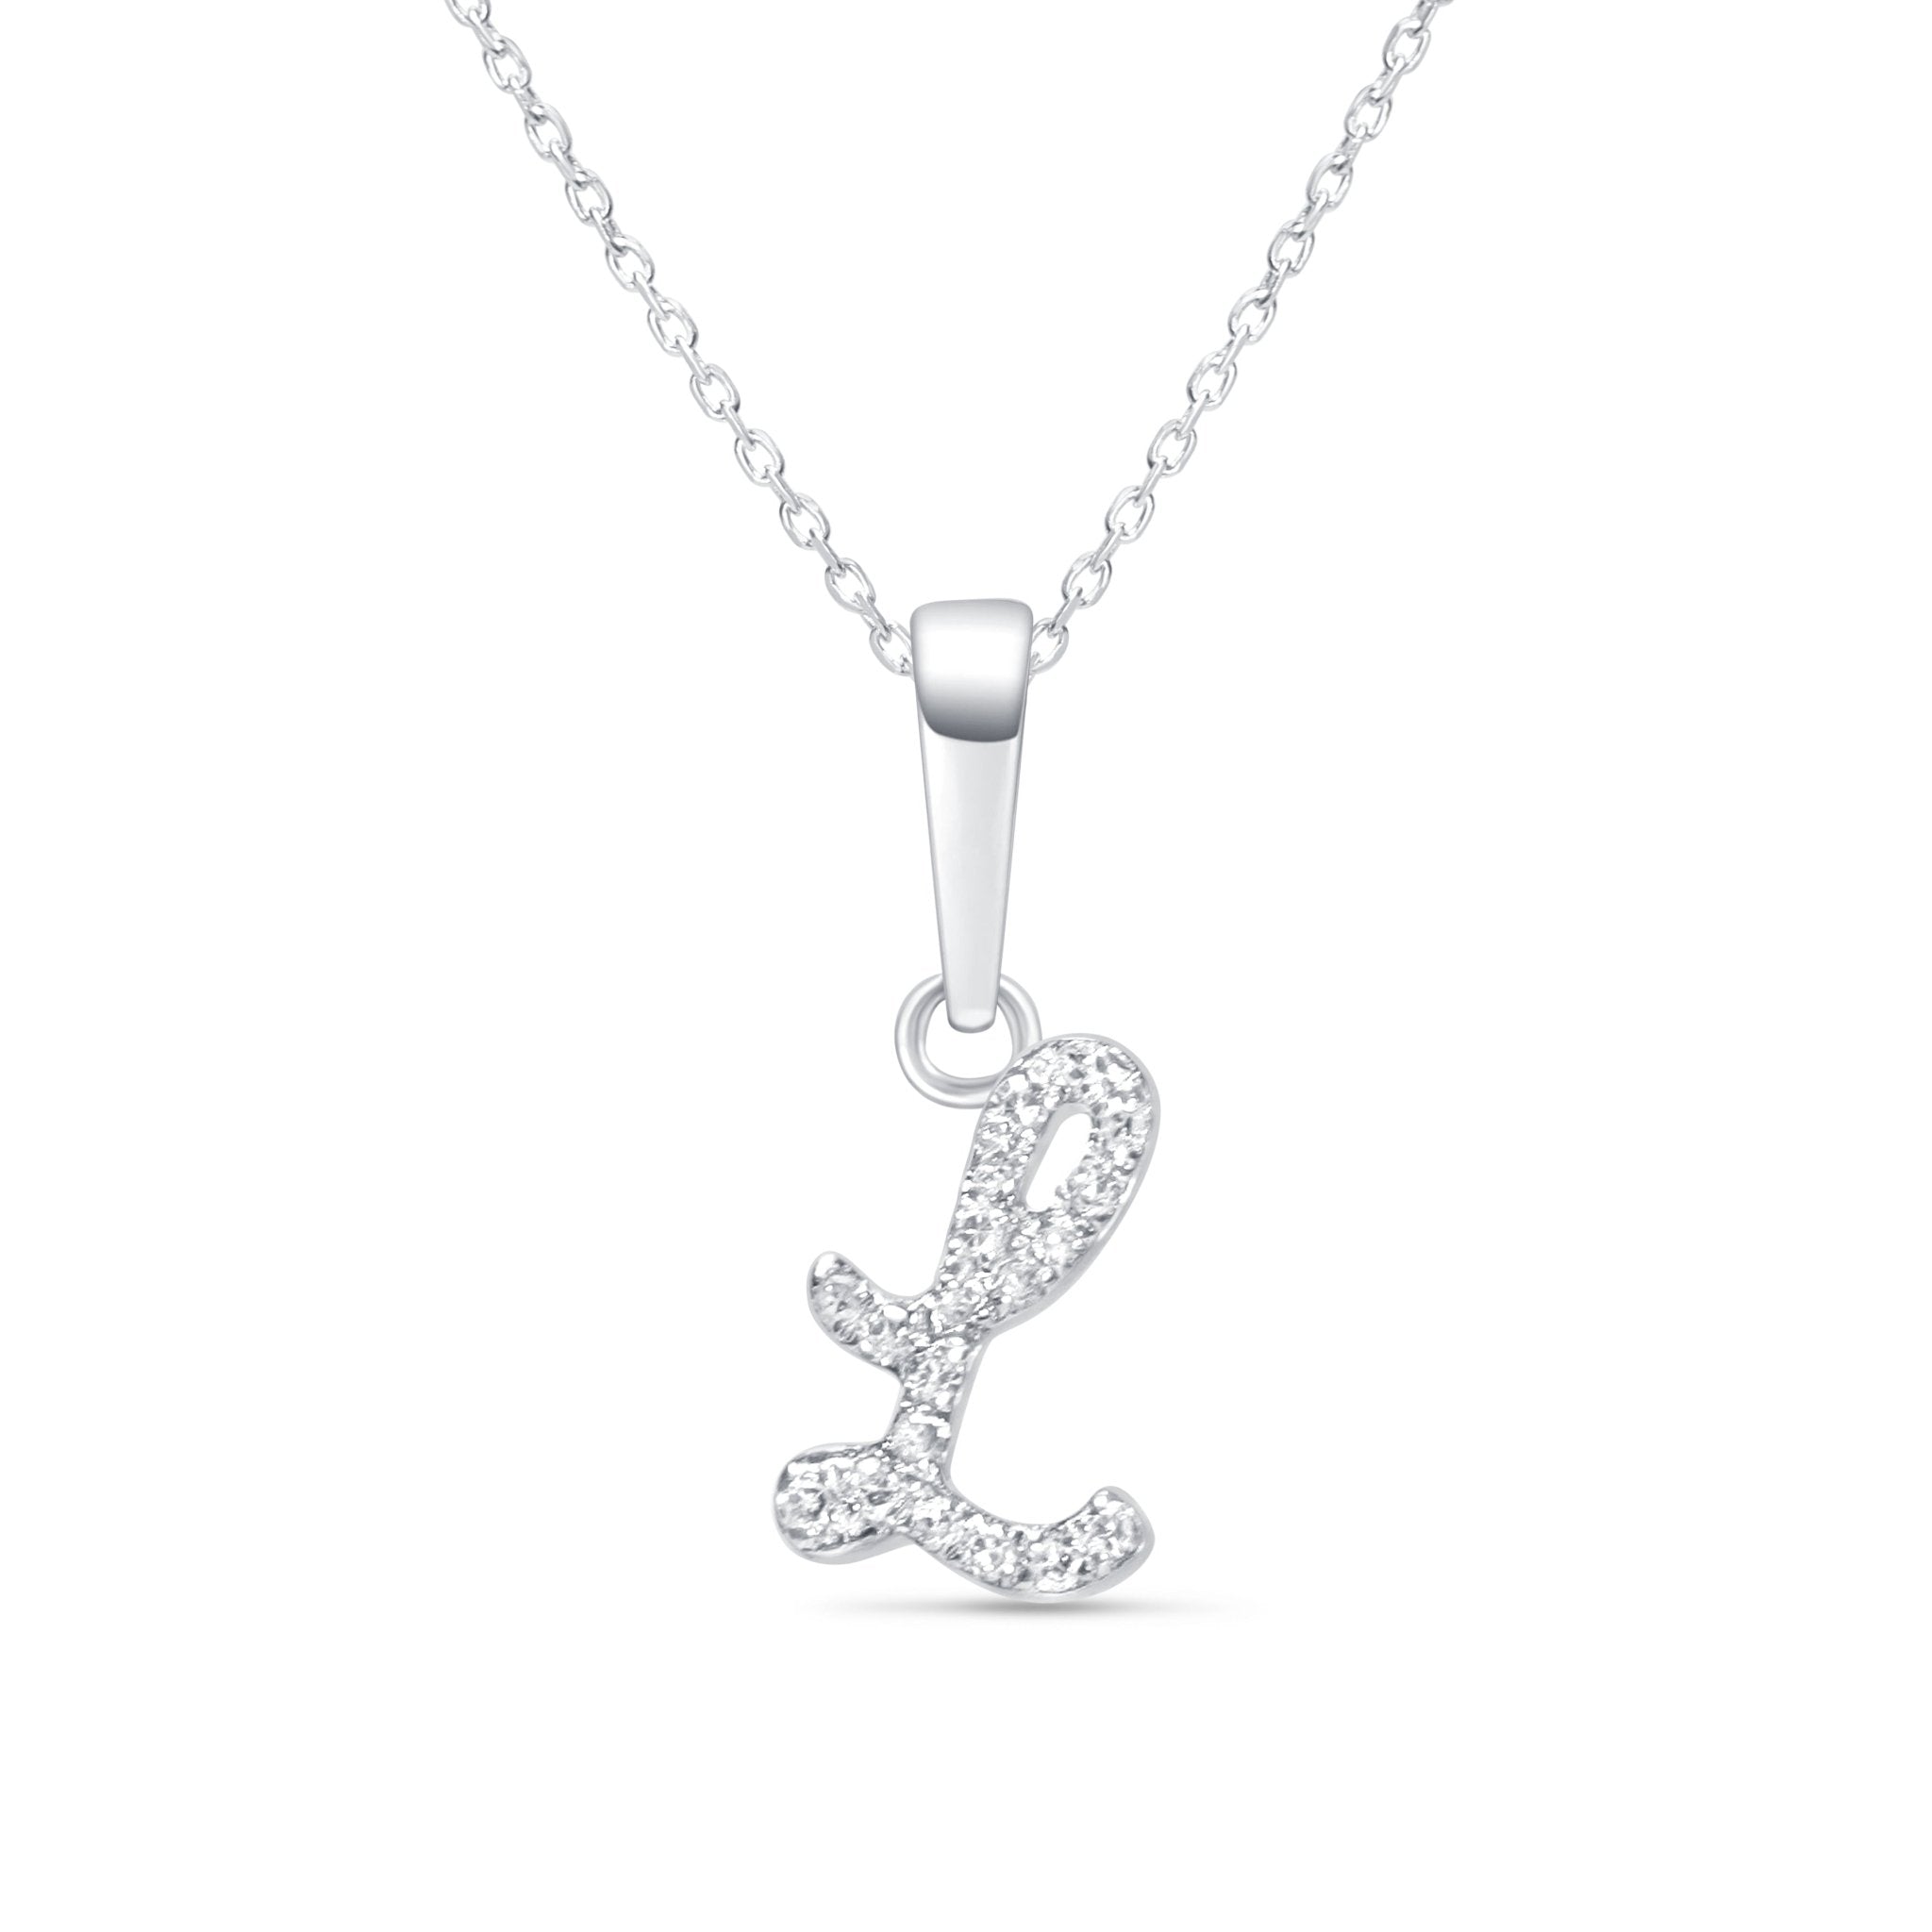 Cursive Diamond Initial Necklace - L Necklaces Estella Collection #product_description# 18557 14k Diamond Gemstone #tag4# #tag5# #tag6# #tag7# #tag8# #tag9# #tag10# 14k White Gold